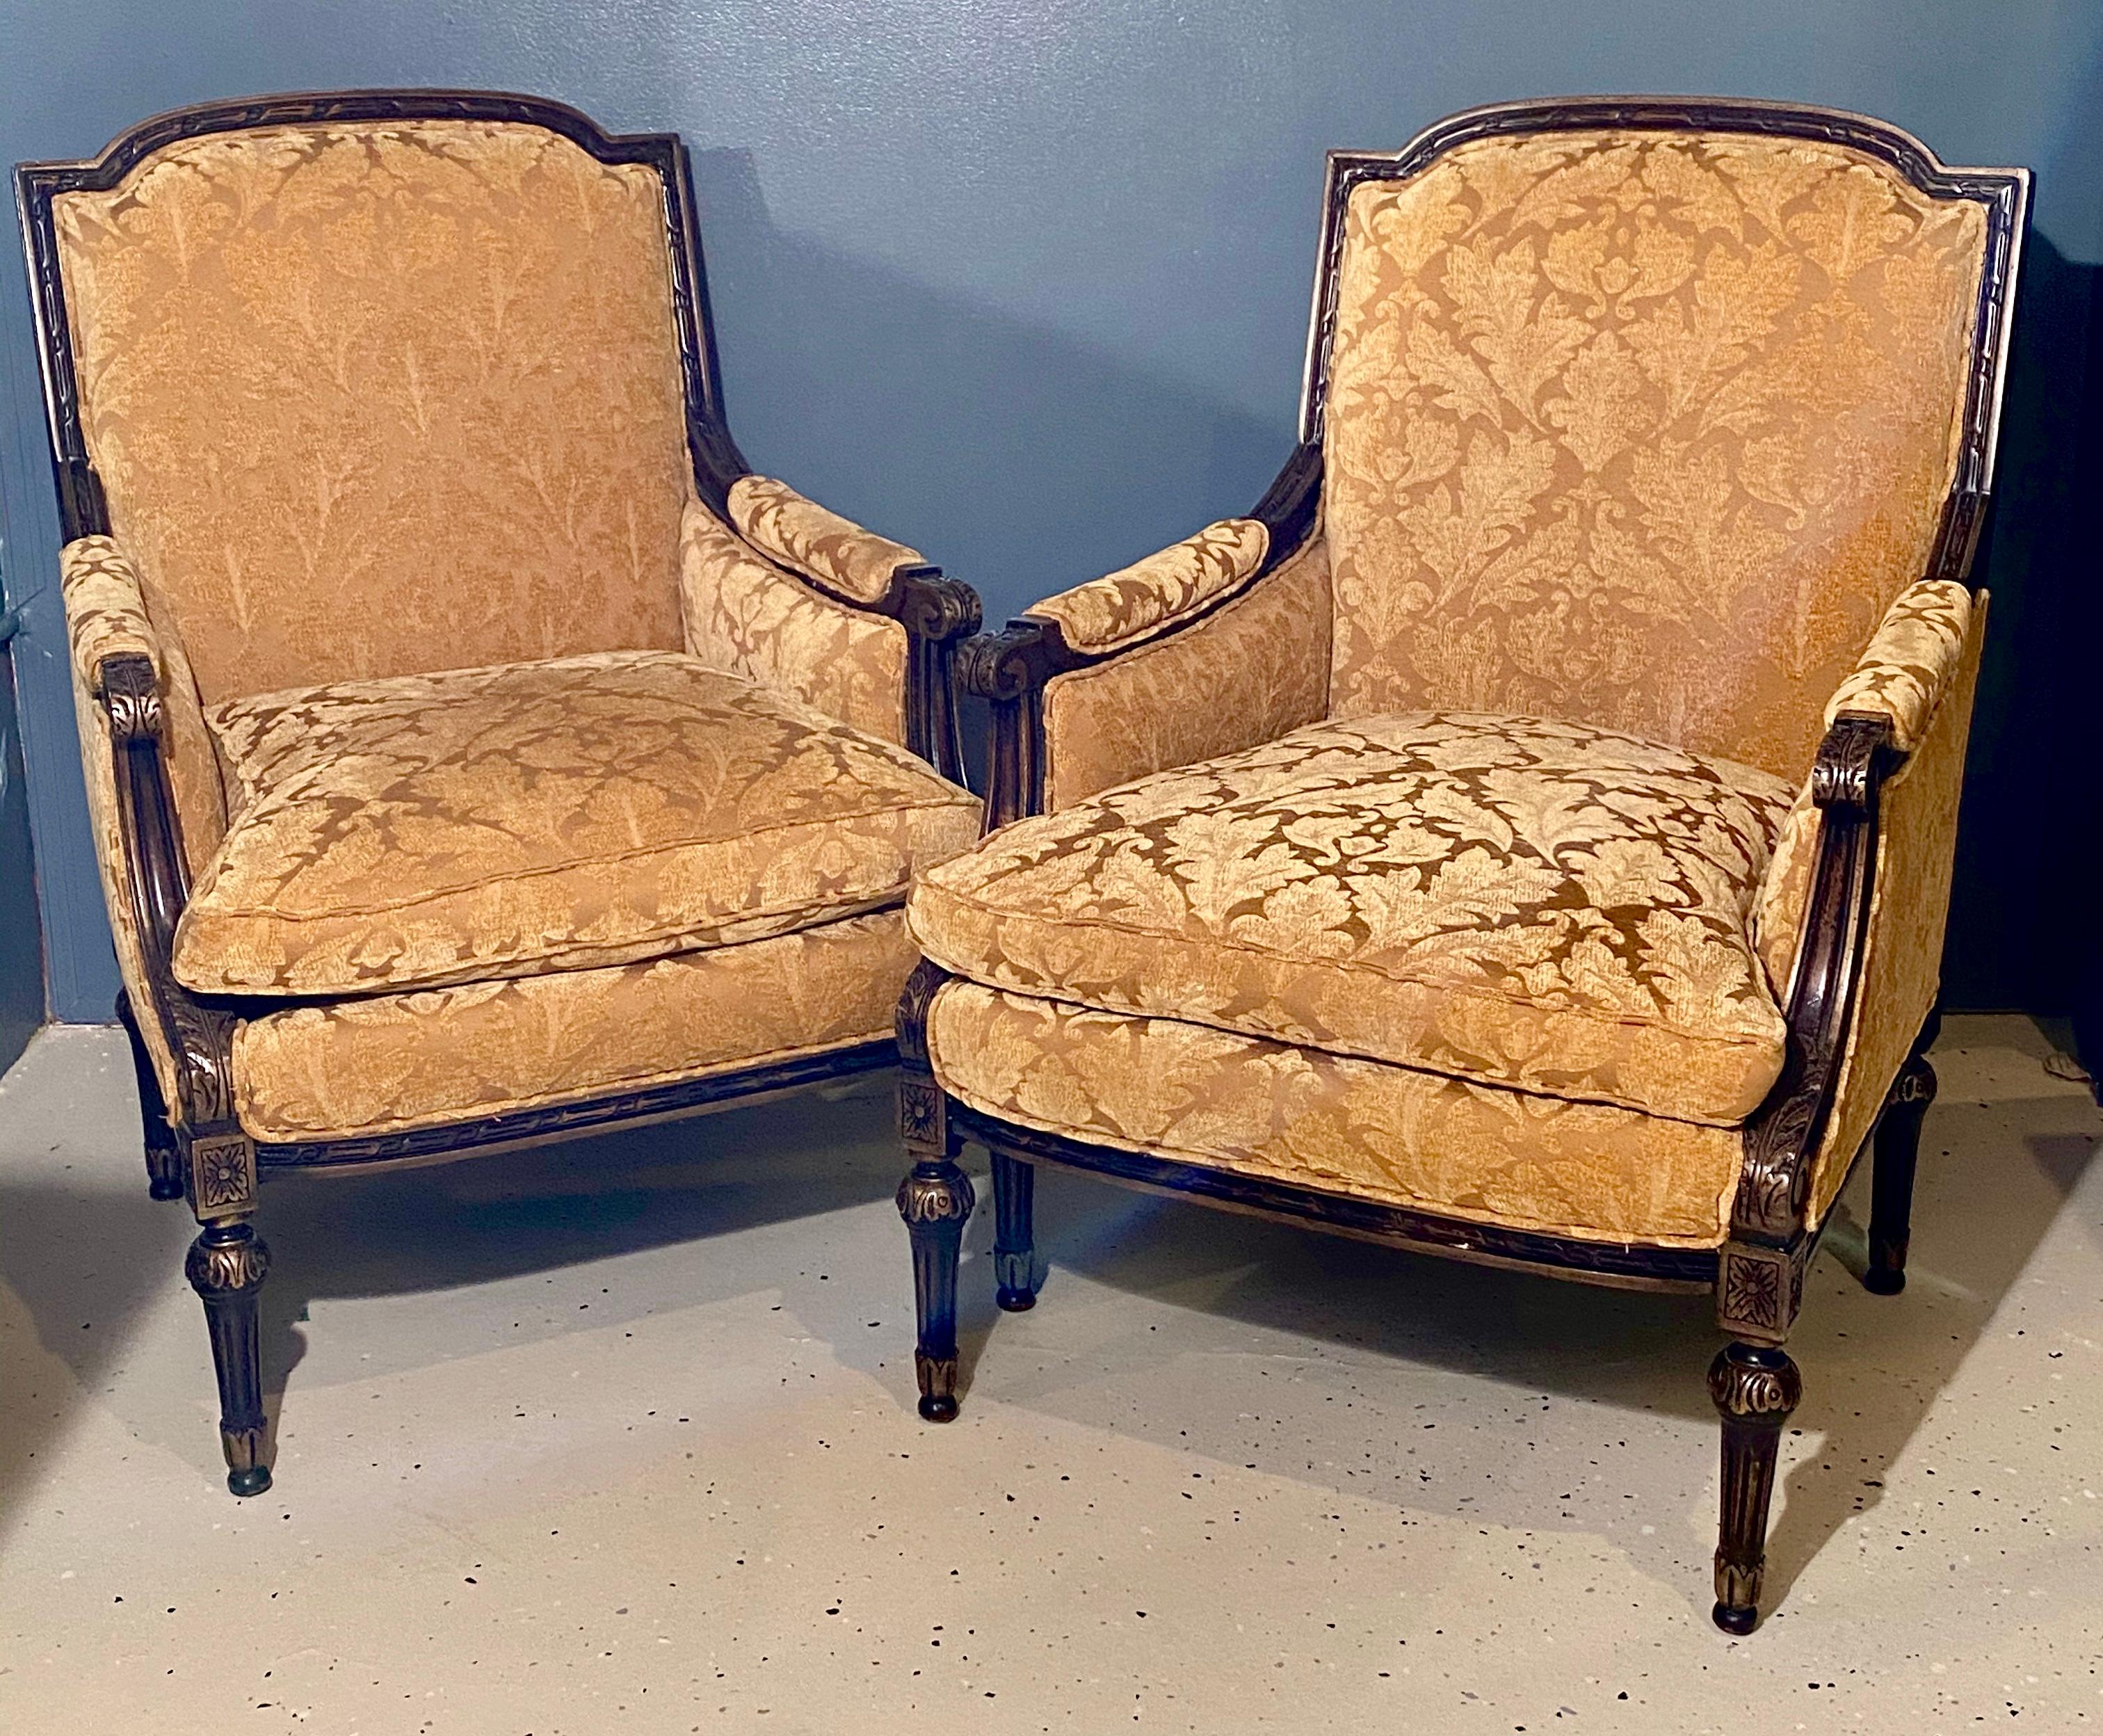 Paar Fauteuils oder Sessel im Jansen-Stil, jeweils in der Louis-XVI-Form mit skulpturalem Samtstoff. Das Paar ist fein gepolstert mit goldenem Samt mit Blattendamastmuster und gepolsterten Armlehnen, wahrscheinlich aus Scalamandre. Jeweils mit